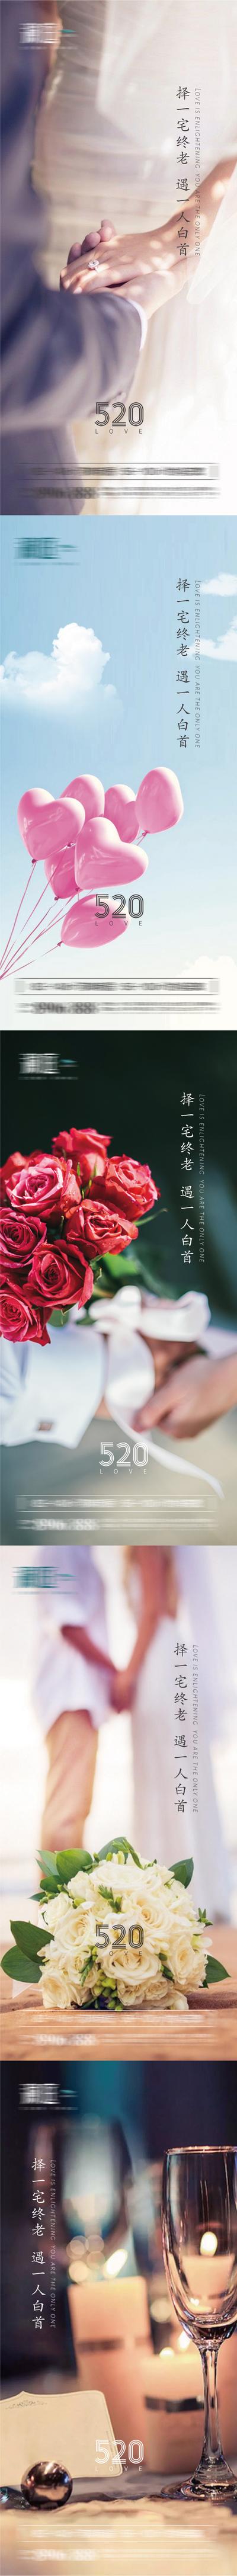 南门网 海报 公历节日 520 情侣 酒杯 爱情 鲜花